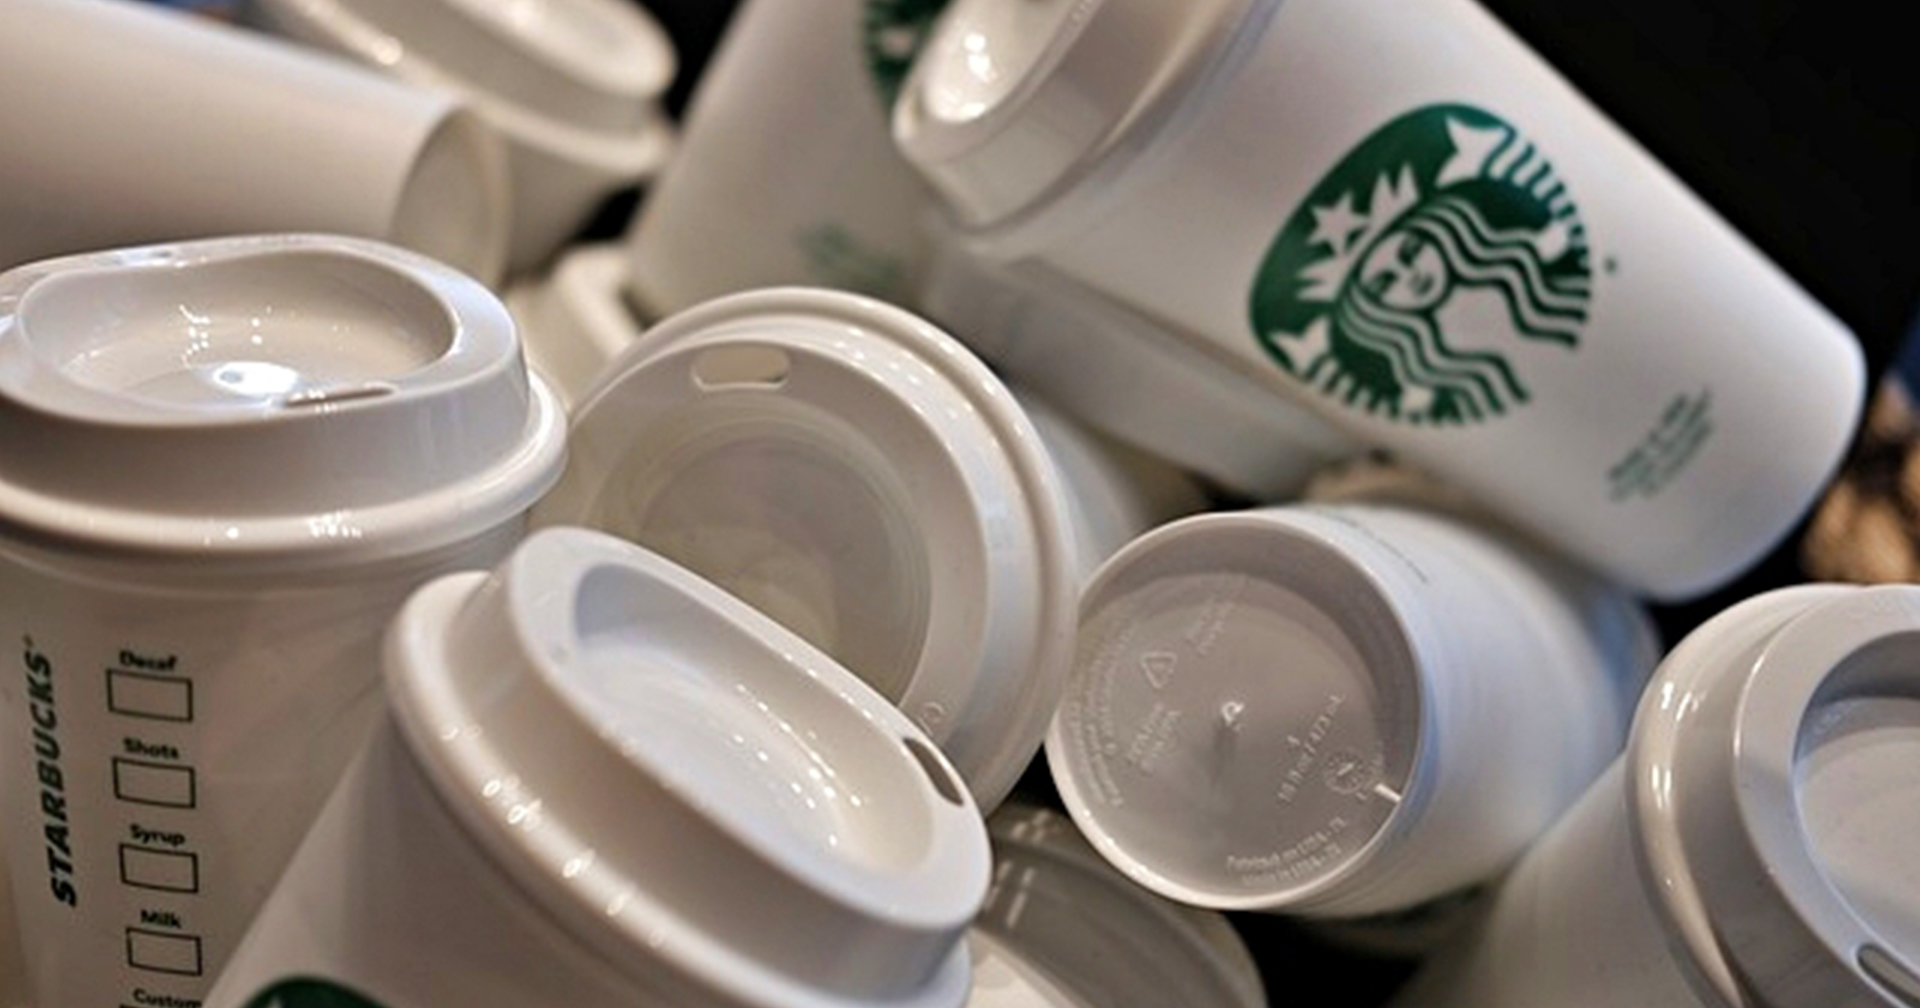 ขอเวลาอีก 4 ปี! Starbucks เกาหลีใต้ จะเลิกใช้แก้วพลาสติก 1,200 สาขาทั่วประเทศ